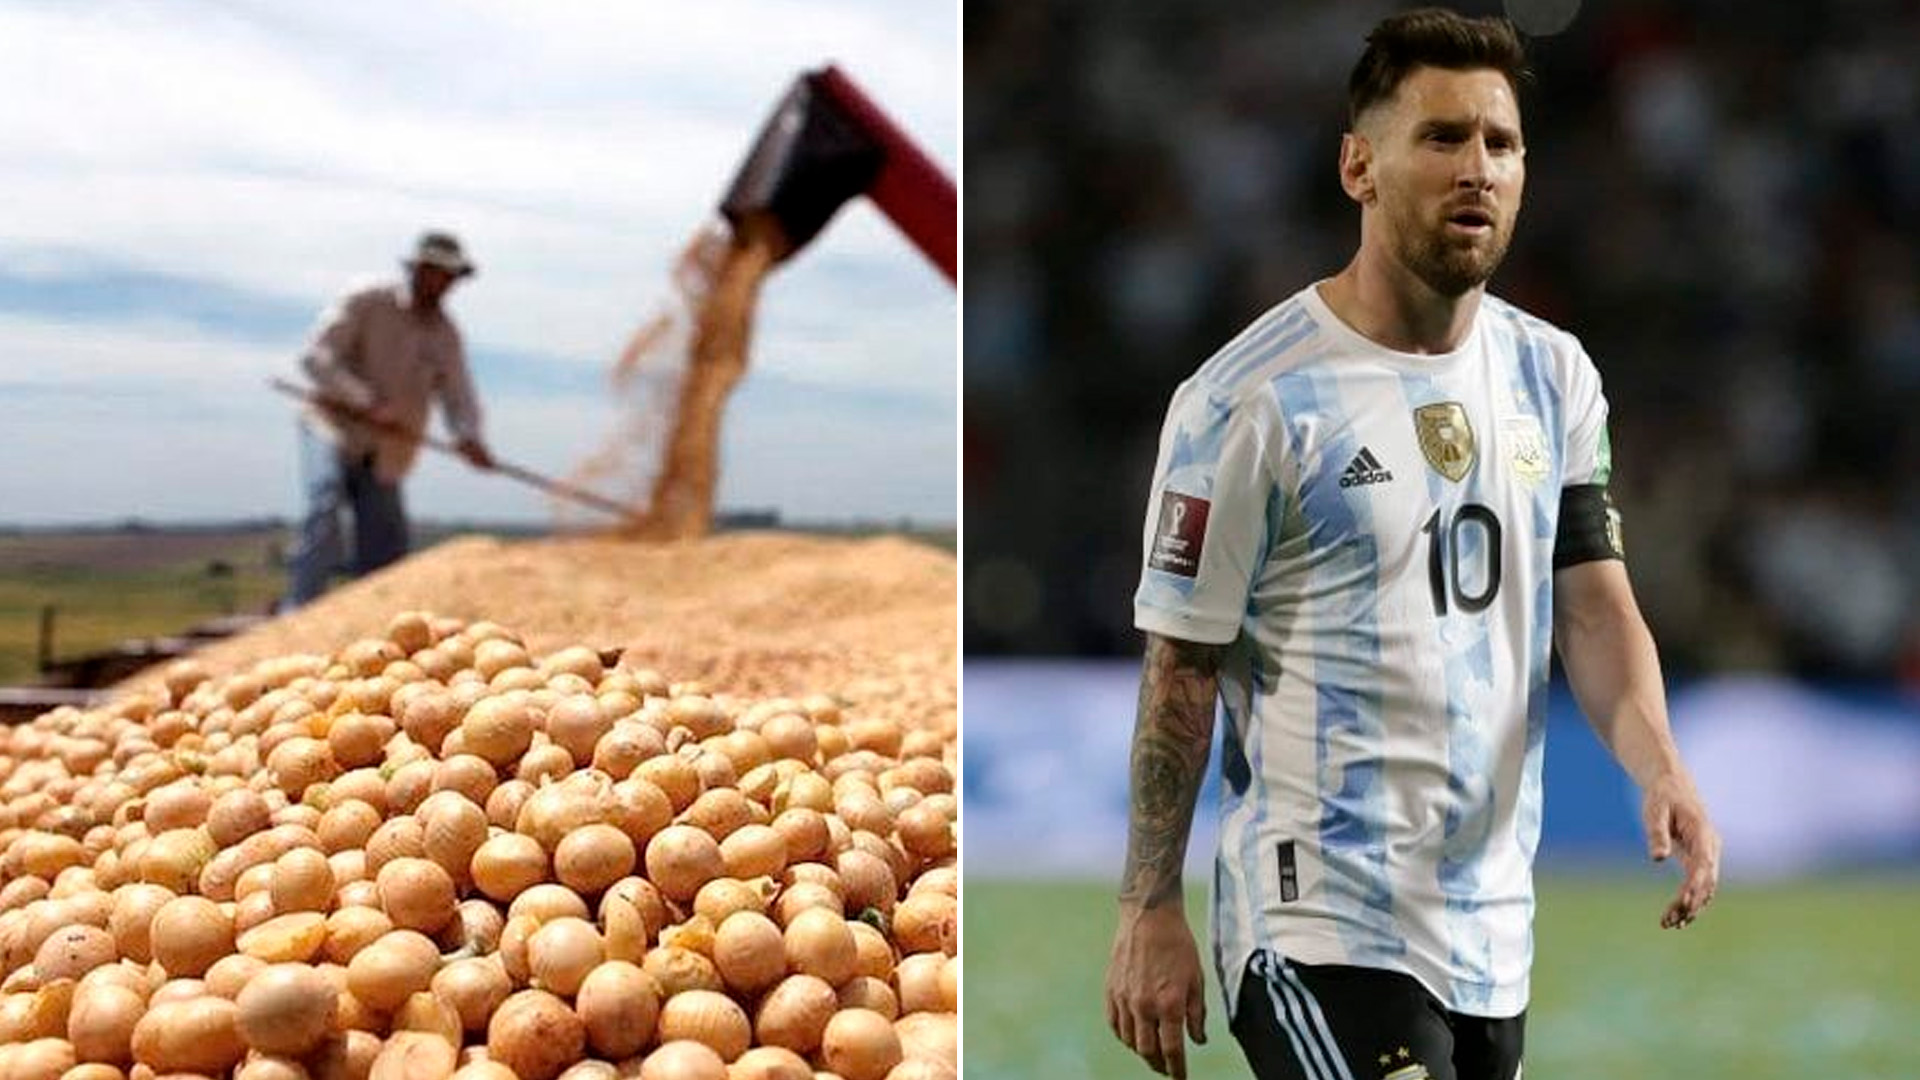 El cálculo es que unos 43.000 argentinos ya compraron pasajes e hicieron reservas de alojamiento para el Mundial de Fútbol en Qatar. A diferencia del "dólar-soja", de $ 200, el "dólar Qatar" costará $ 300, impuestos incluidos